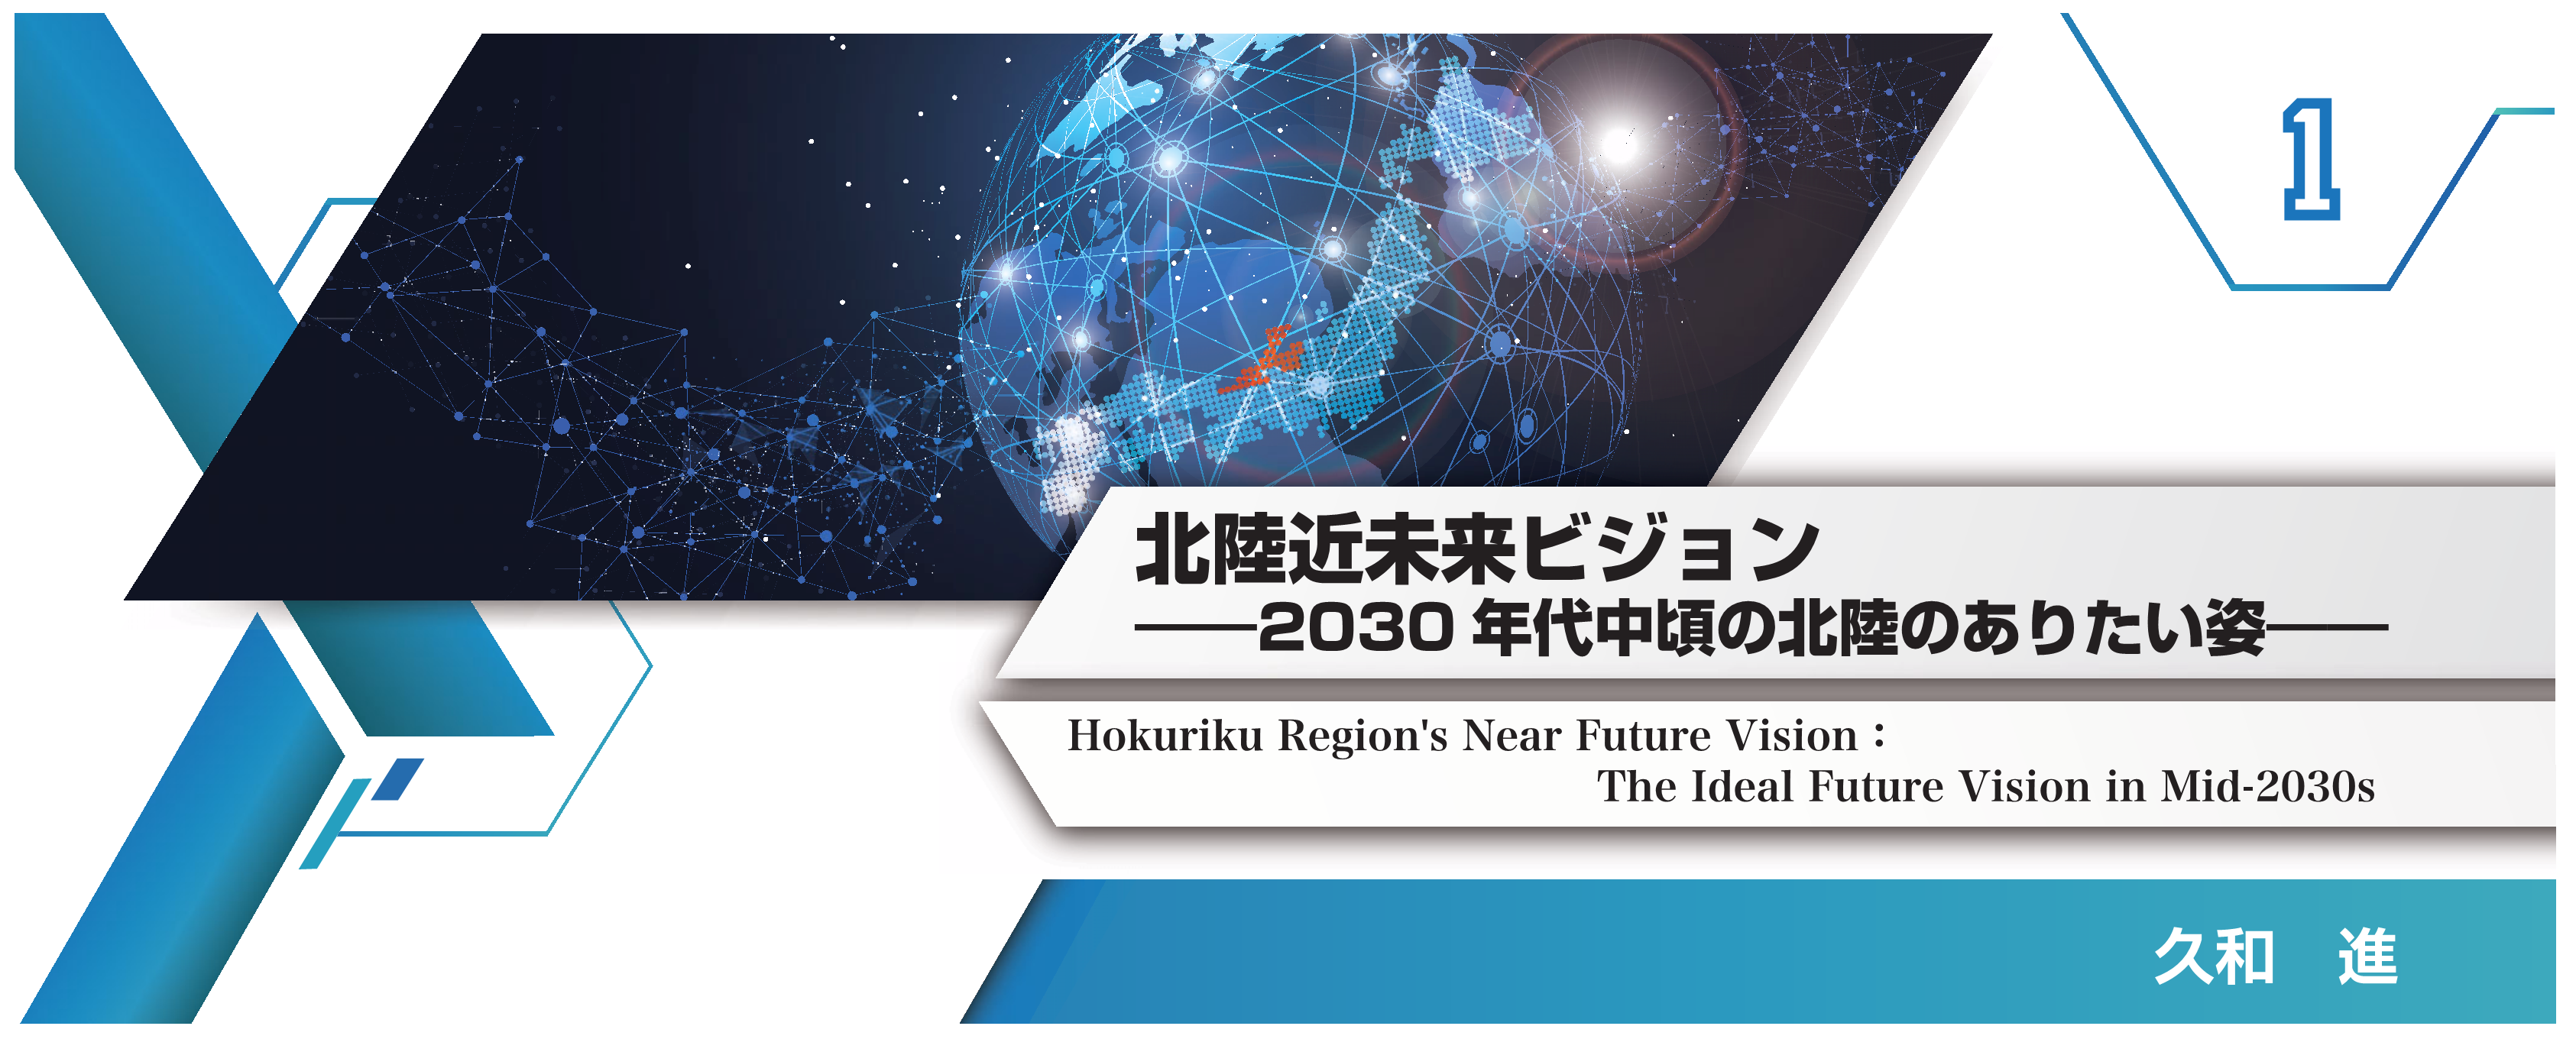 特別小特集 1. 北陸近未来ビジョン――2030年代中頃の北陸のありたい姿―― Hokuriku Region's Near Future Vision : The Ideal Future Vision in Mid-2030s 久和　進